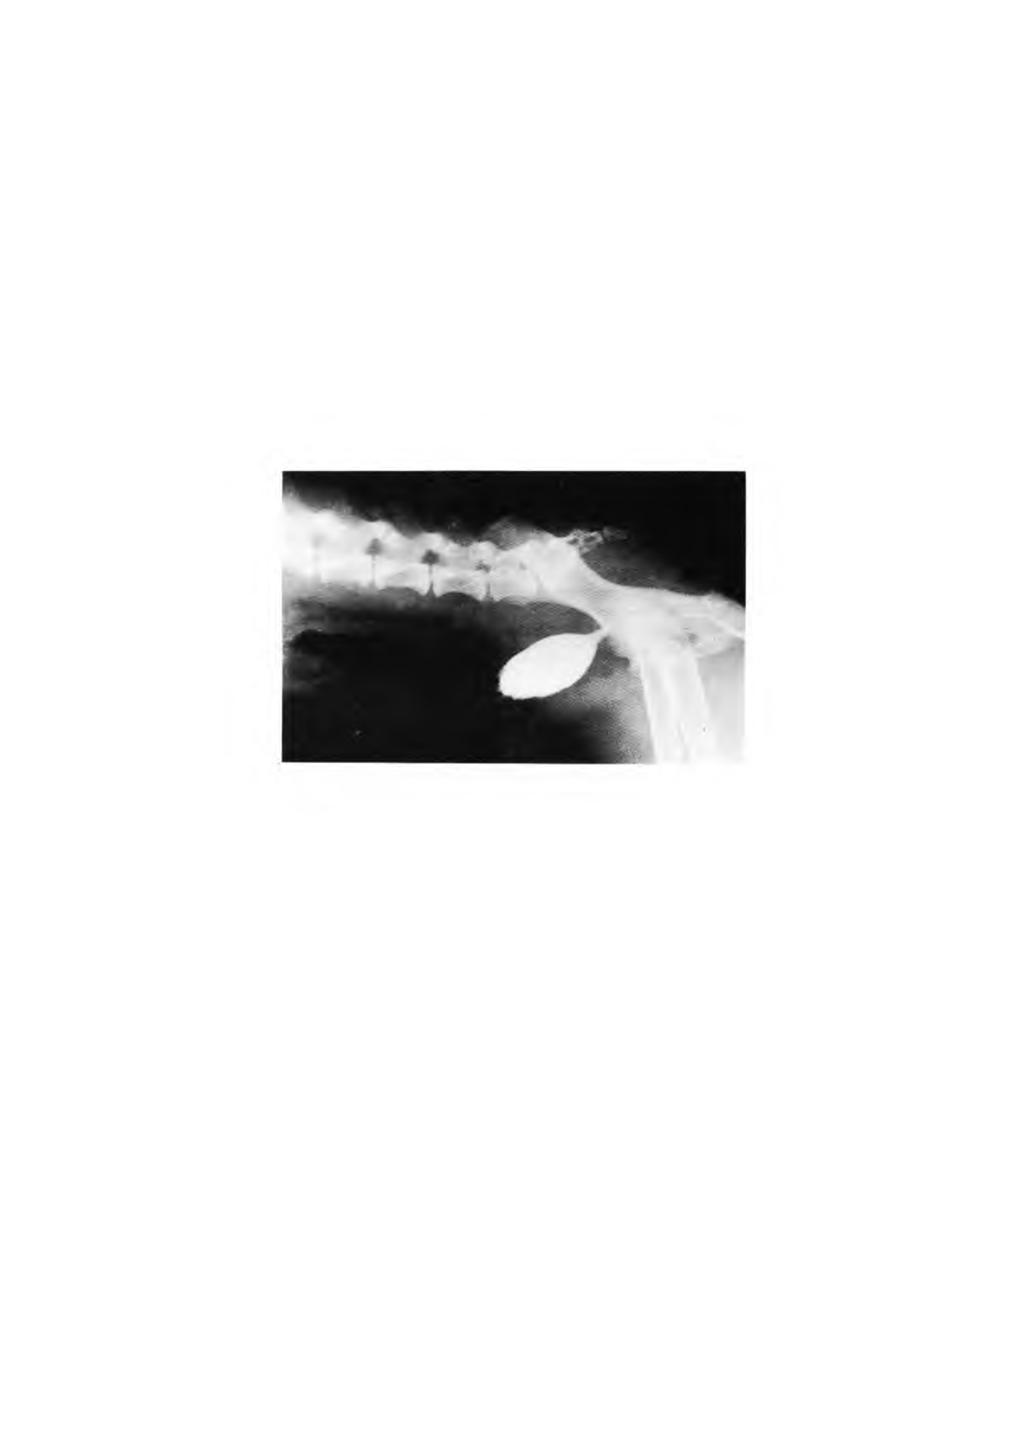 FIGURA 1 - Cistografia mostrando irregularidade da superfície